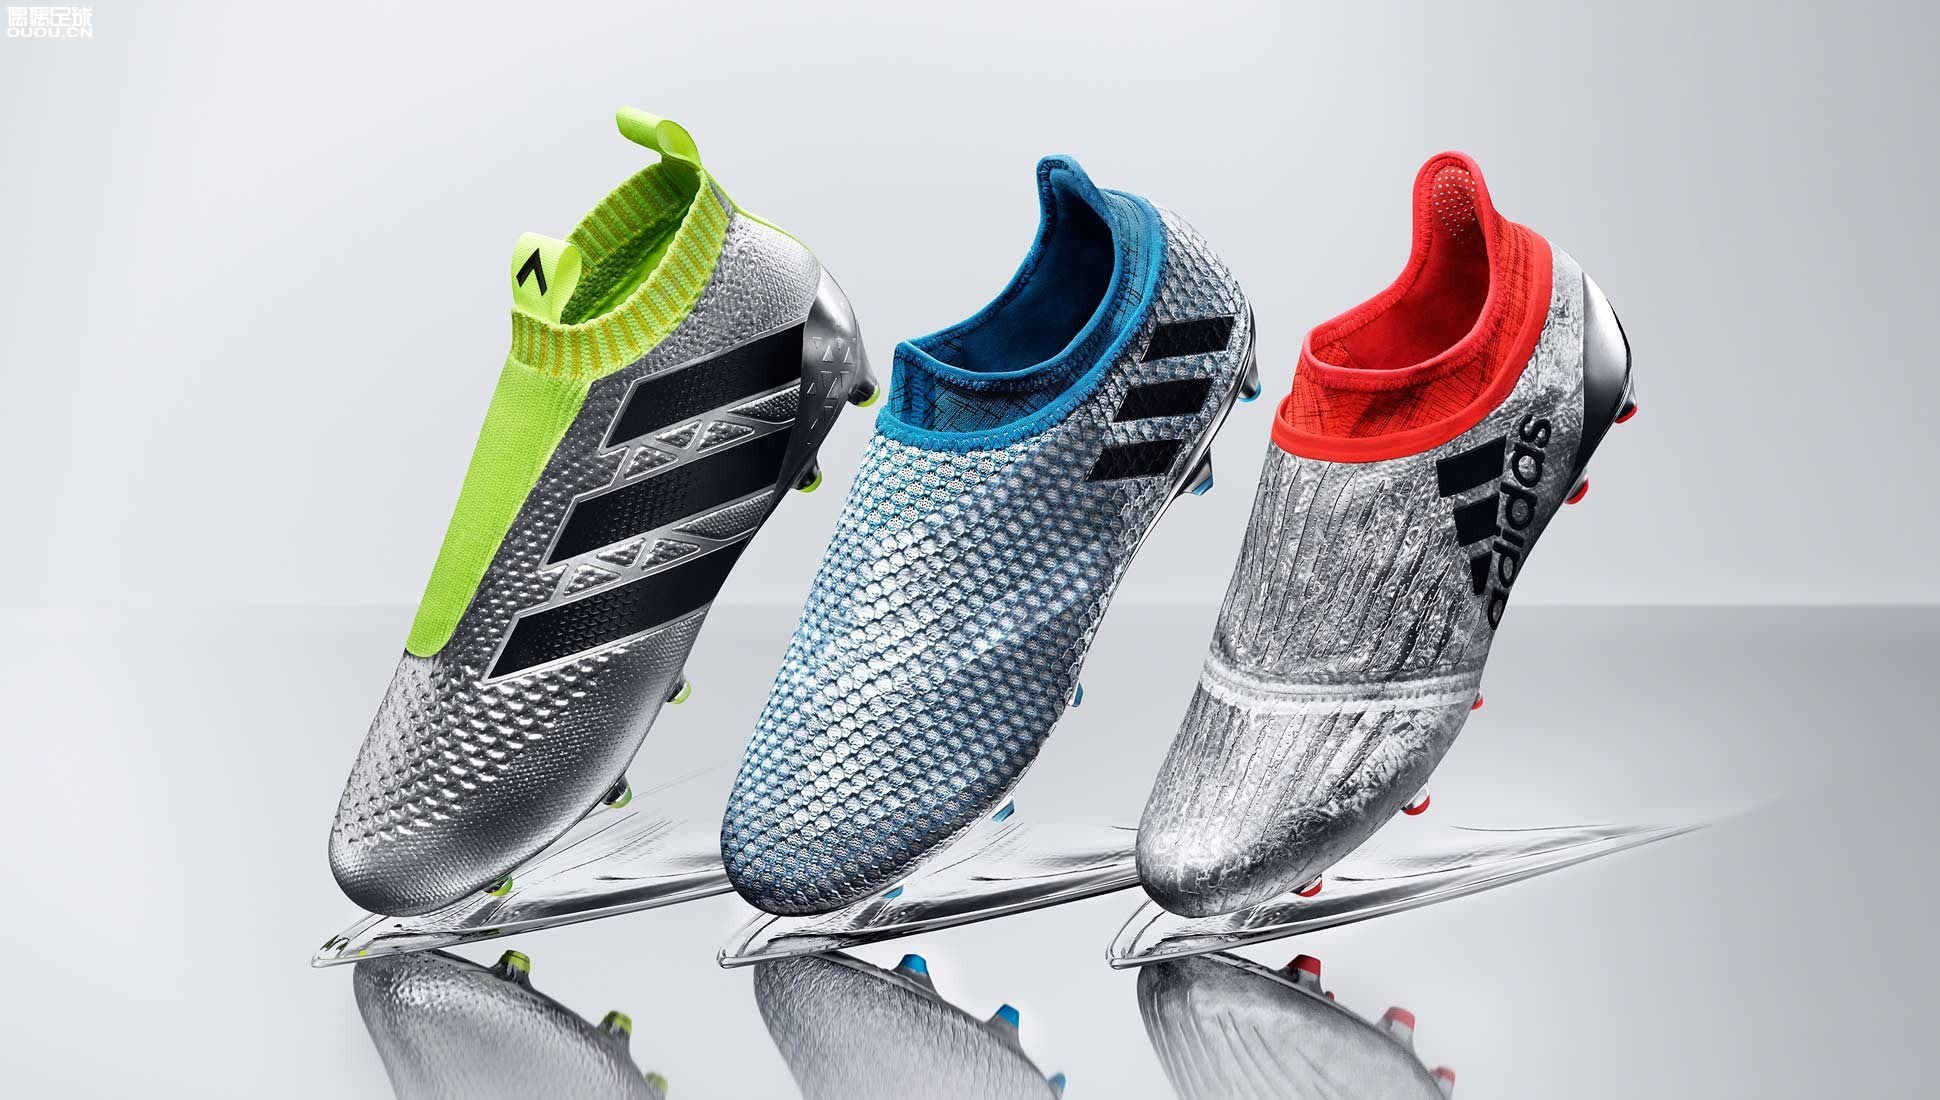 阿迪达斯发布全新水银系列足球鞋犹如披上了